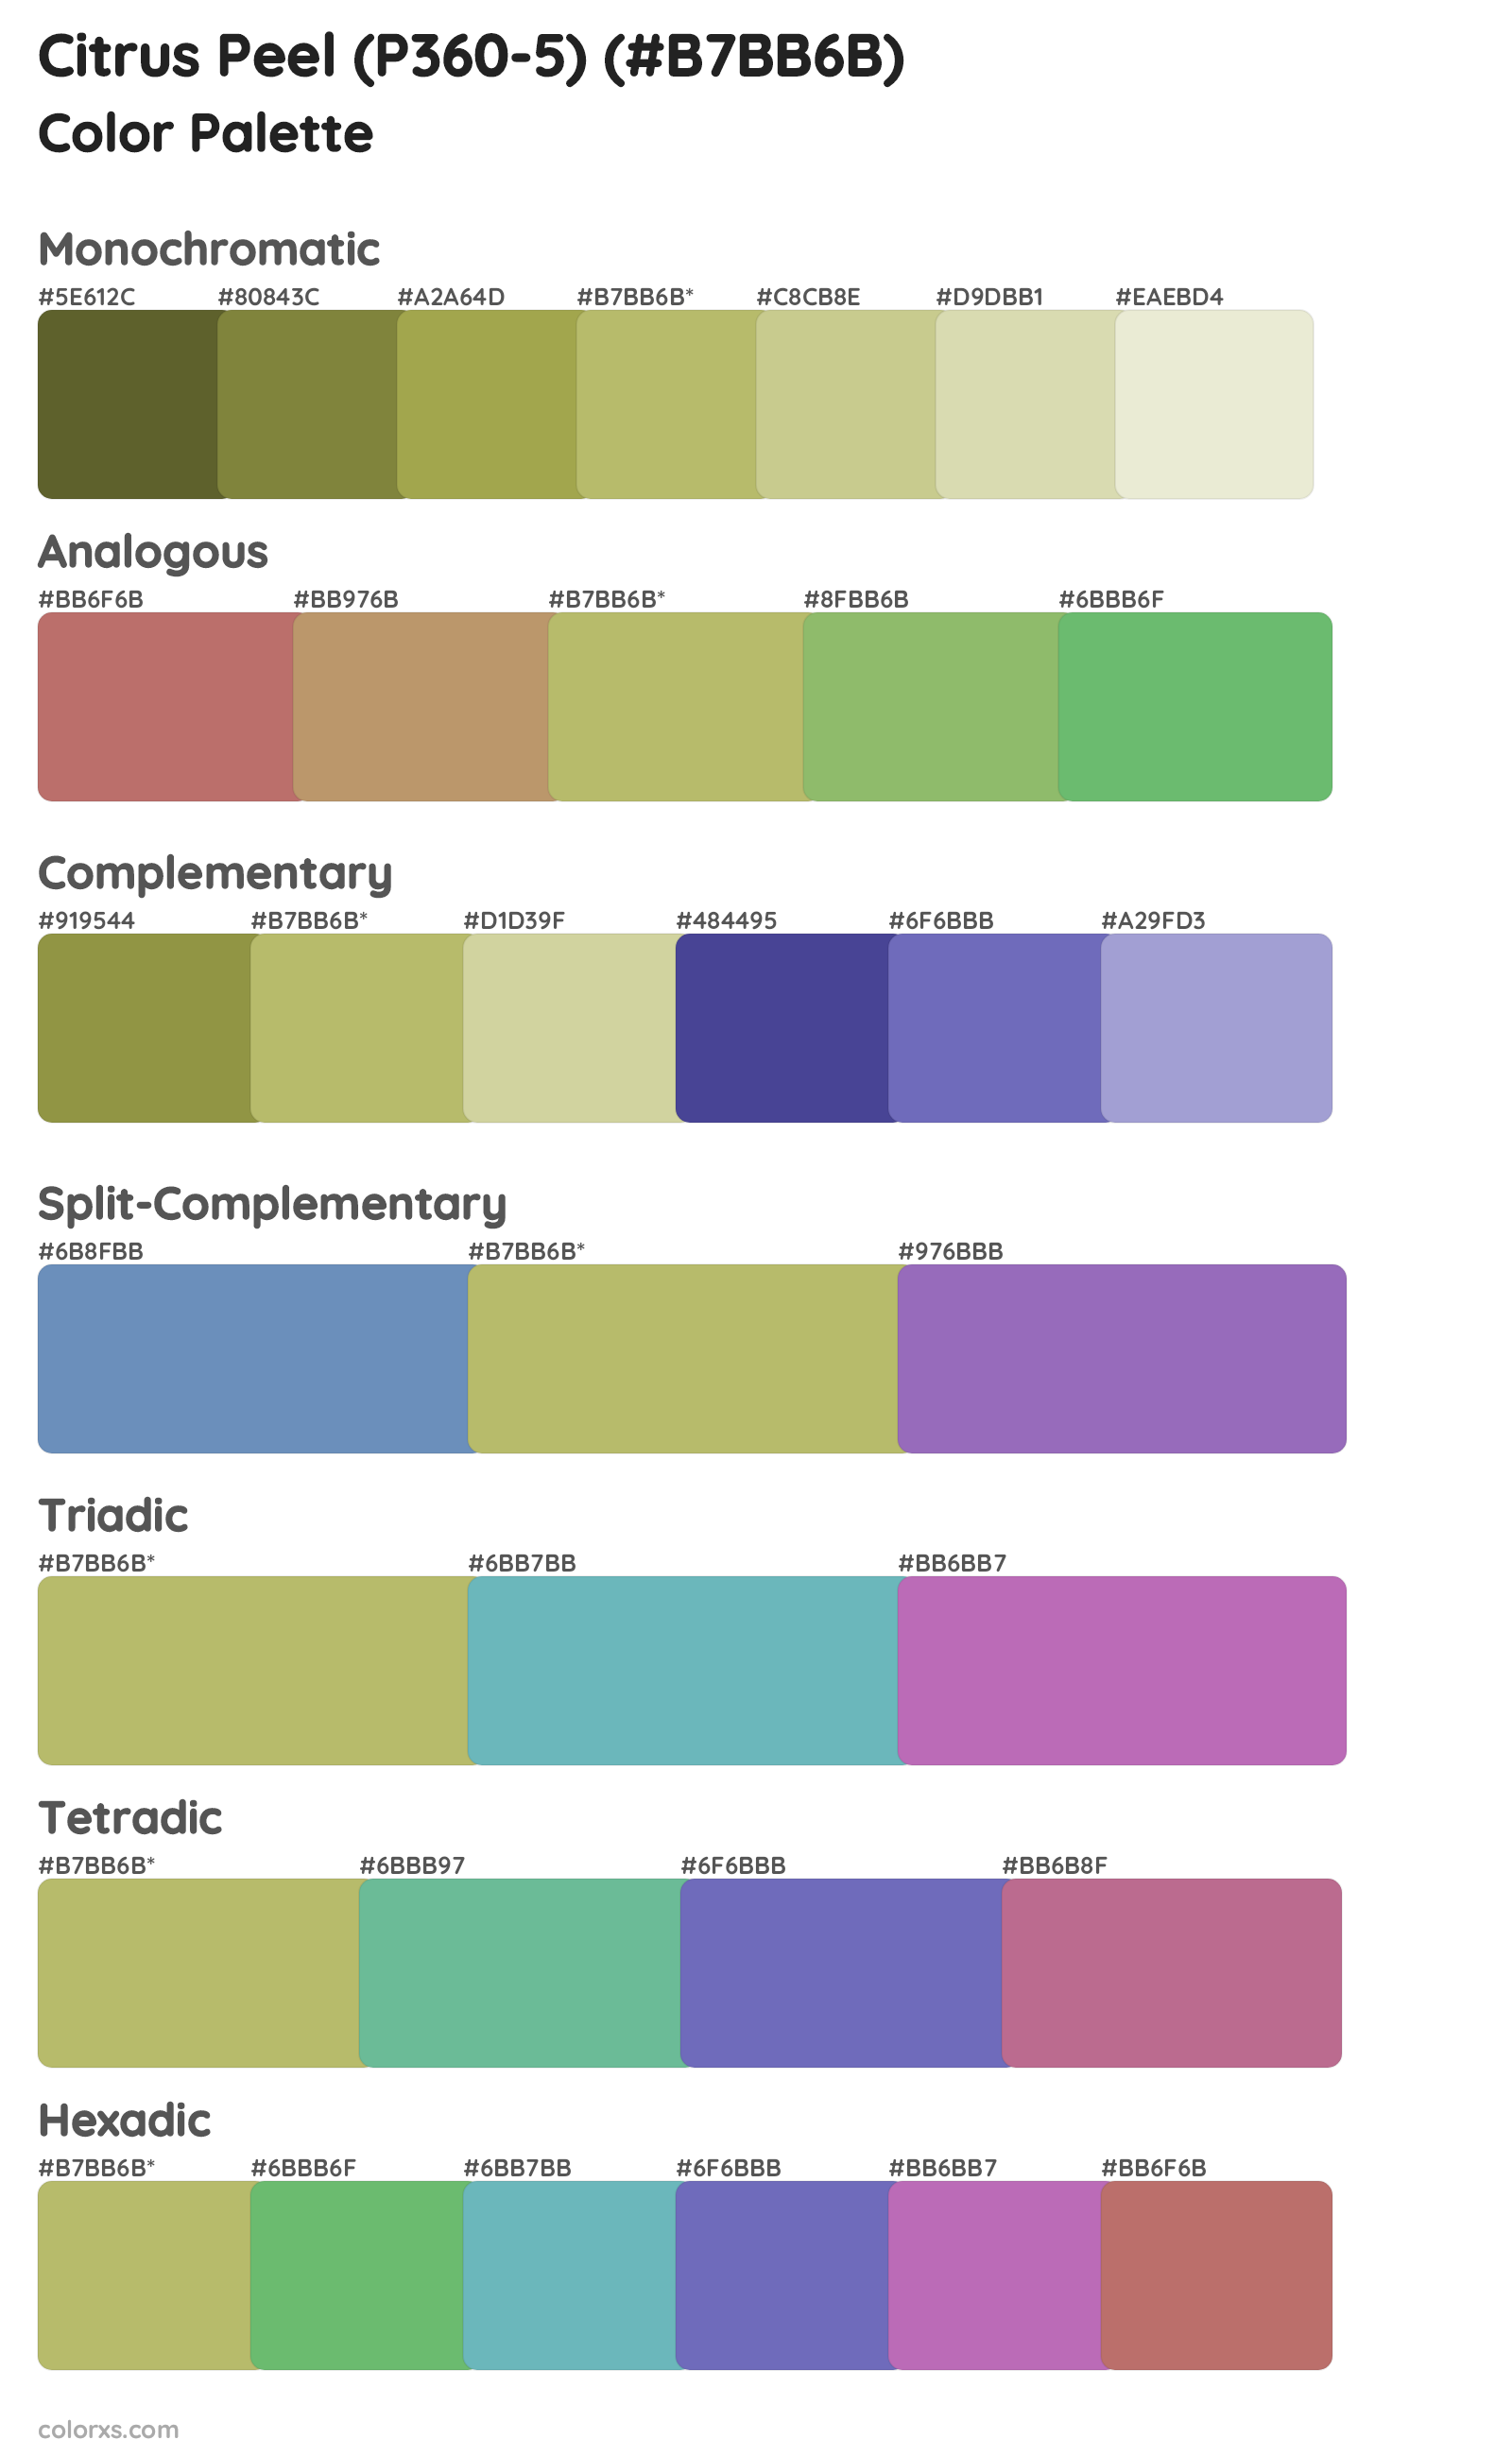 Citrus Peel (P360-5) Color Scheme Palettes